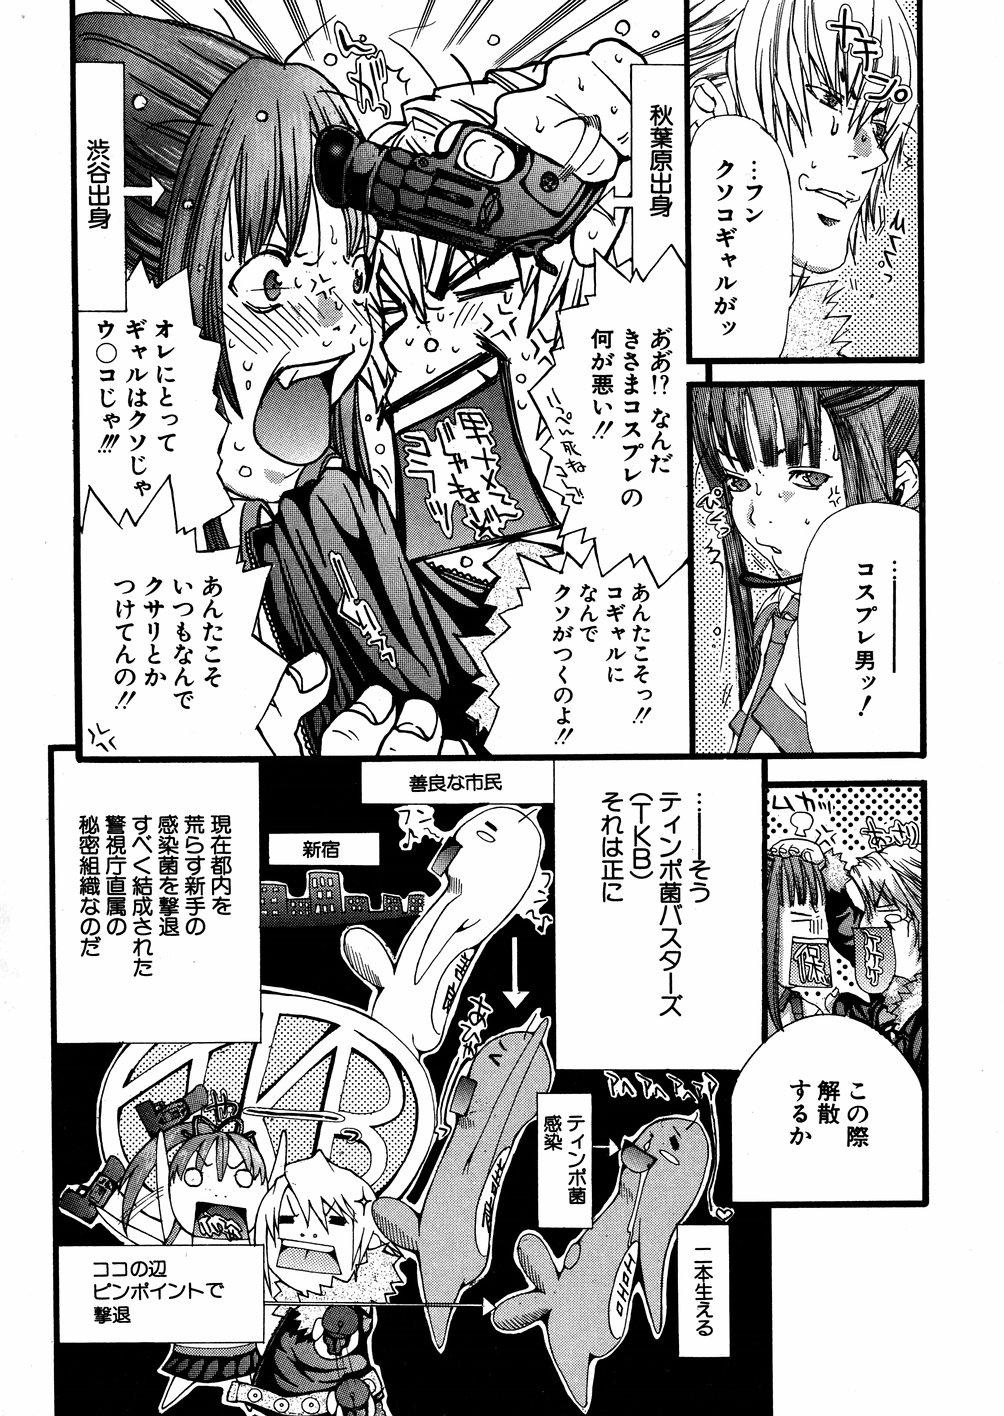 Nerd Miyazaki Maya daihyakka Leaked - Page 9